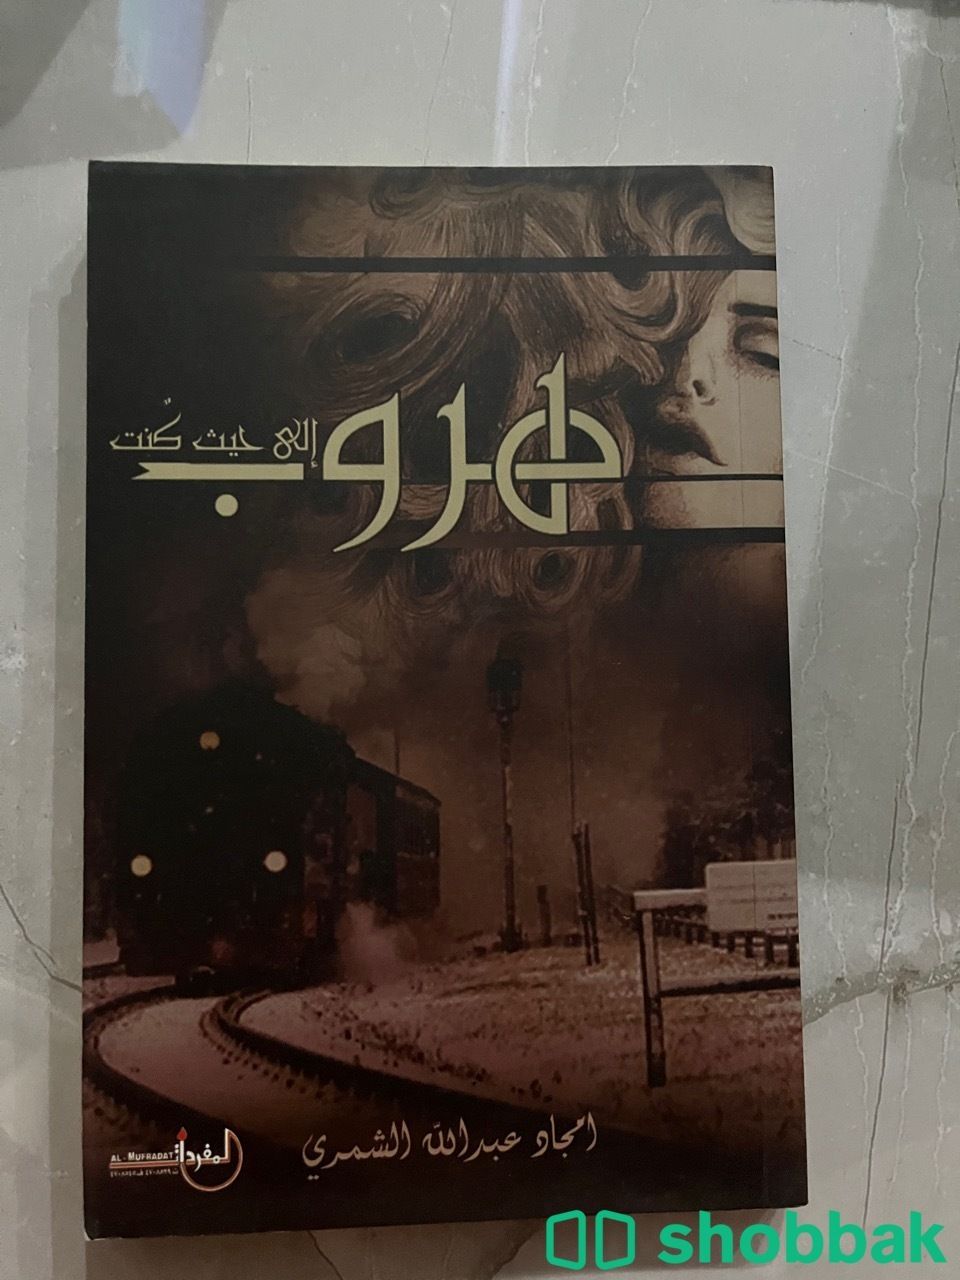 كتاب هروب إلى حيث كنت Shobbak Saudi Arabia